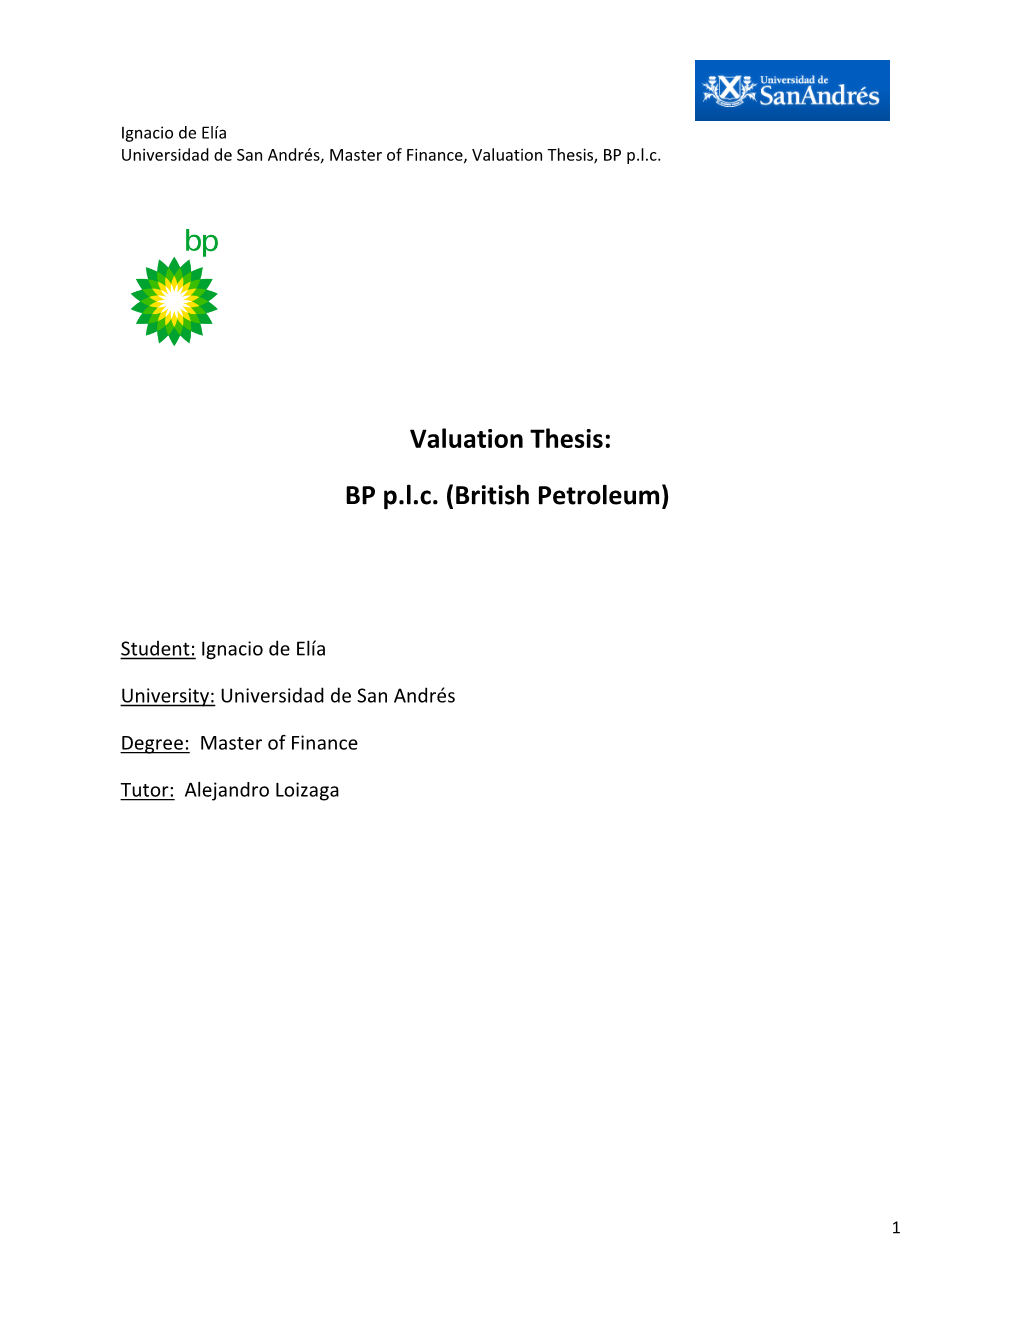 Valuation Thesis: BP P.L.C. (British Petroleum)